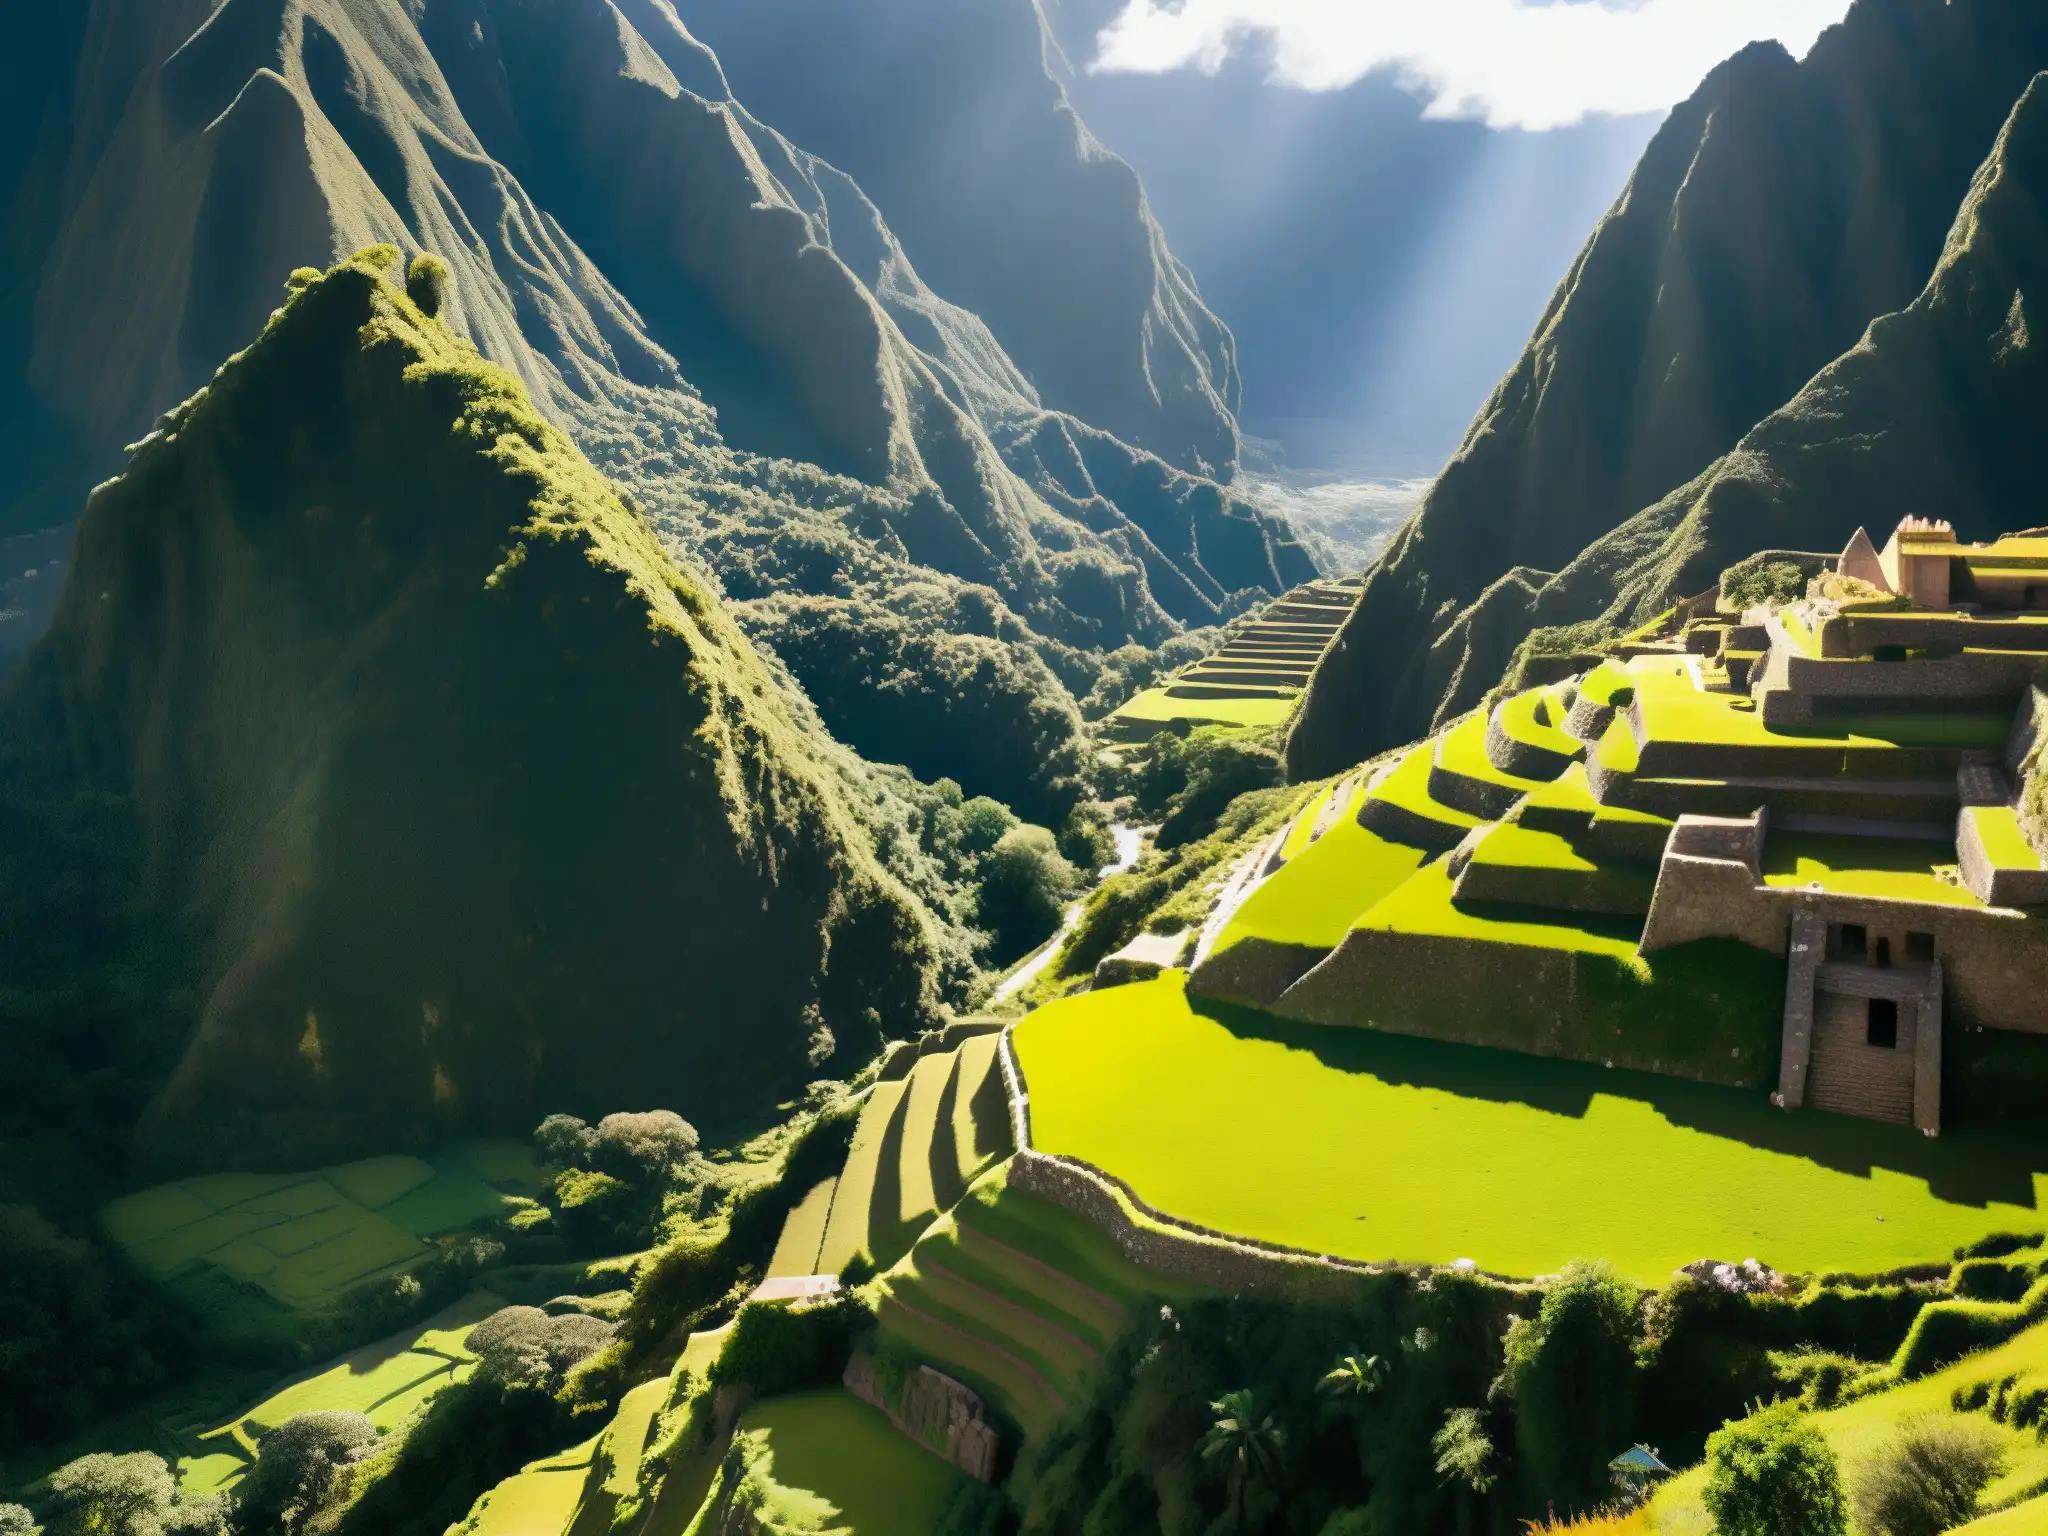 Vista aérea impresionante de ruinas incas entre montañas verdes, con el Camino del Inca visible